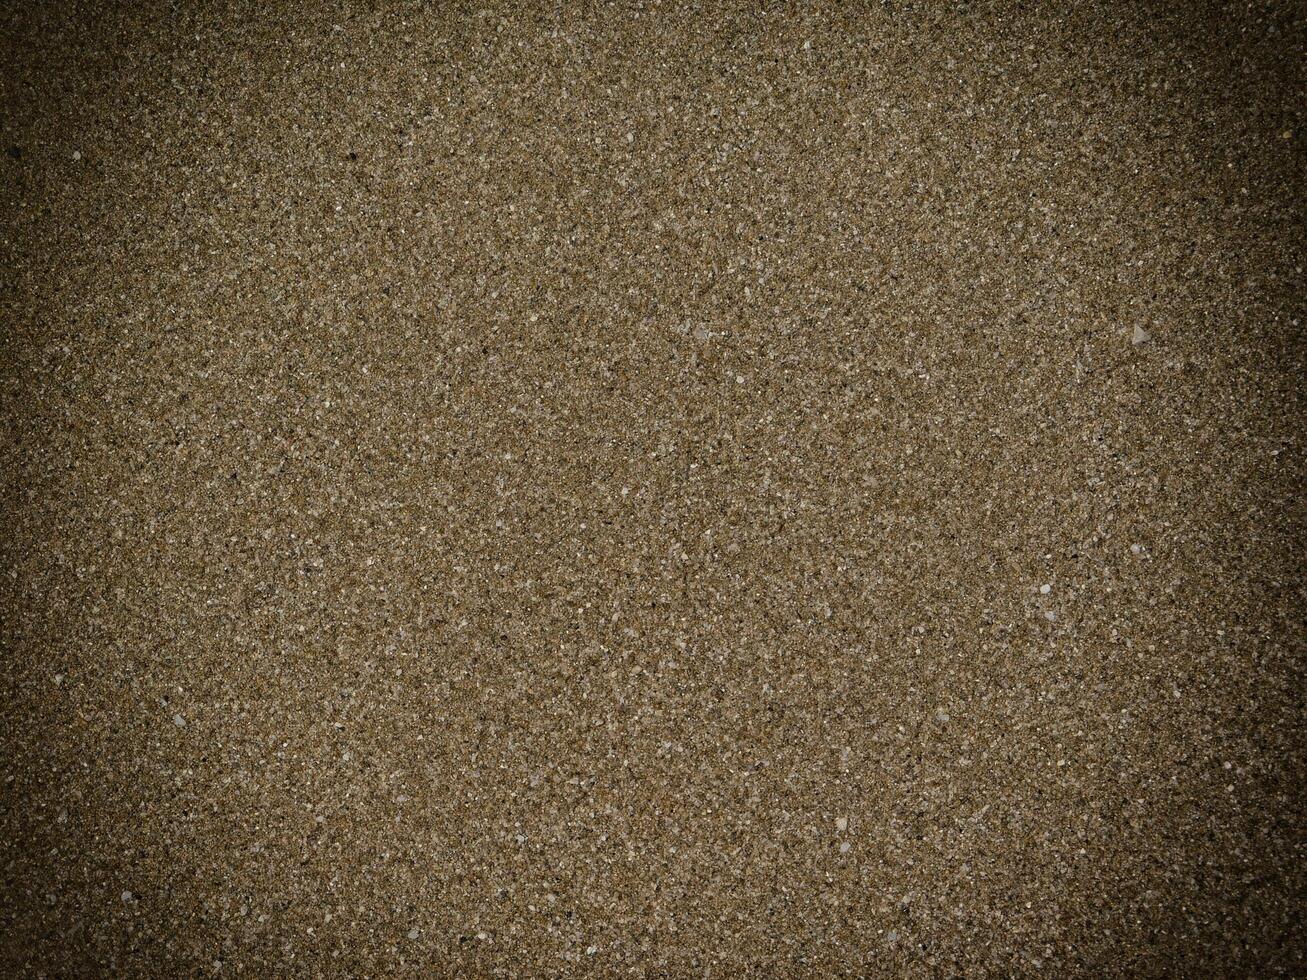 trama di sabbia scura al mare foto